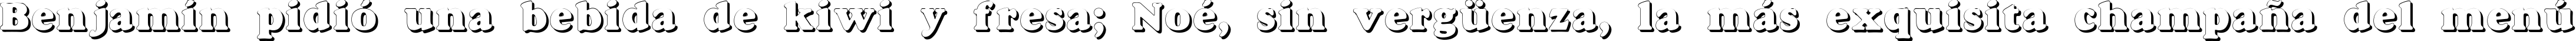 Пример написания шрифтом Dover Shadow текста на испанском